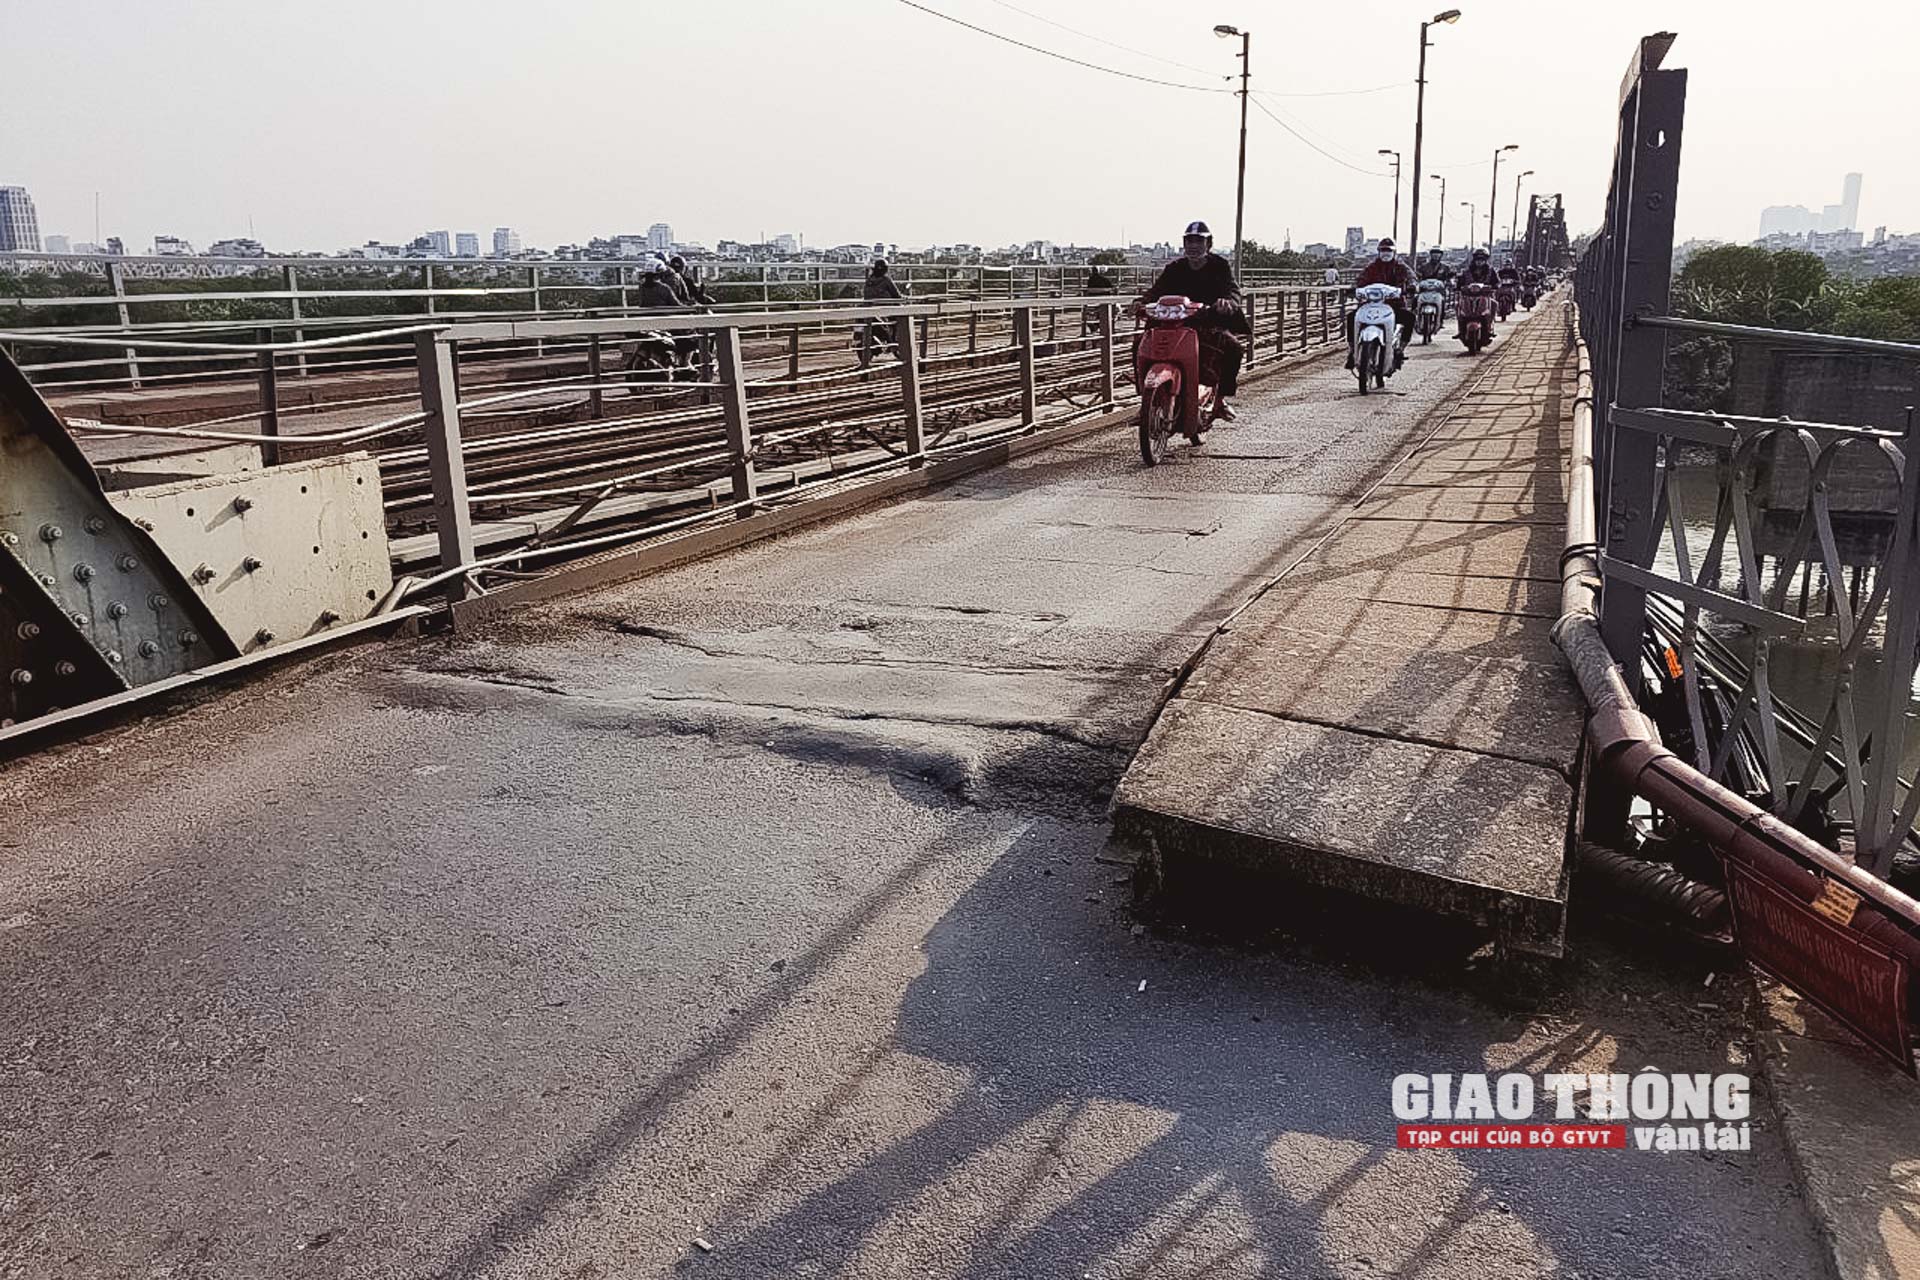 Trên cầu Long Biên, nhiều hạng mục xuống cấp, điển hình như rất nhiều điểm mặt đường bộ bong tróc, lồi lõm.